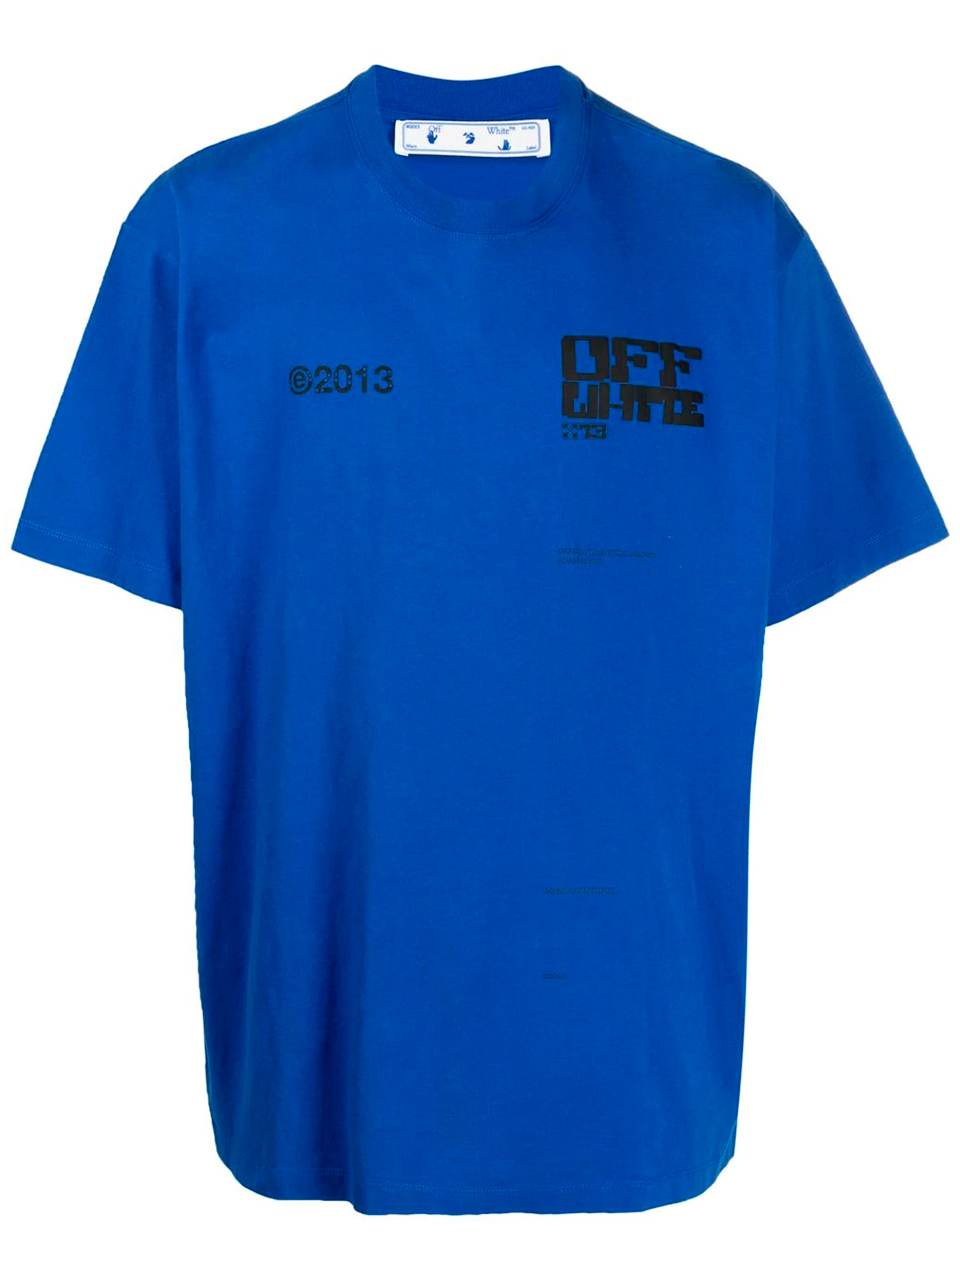 Imagem de: Camiseta Off-White 2013 Azul com Estampa Setas